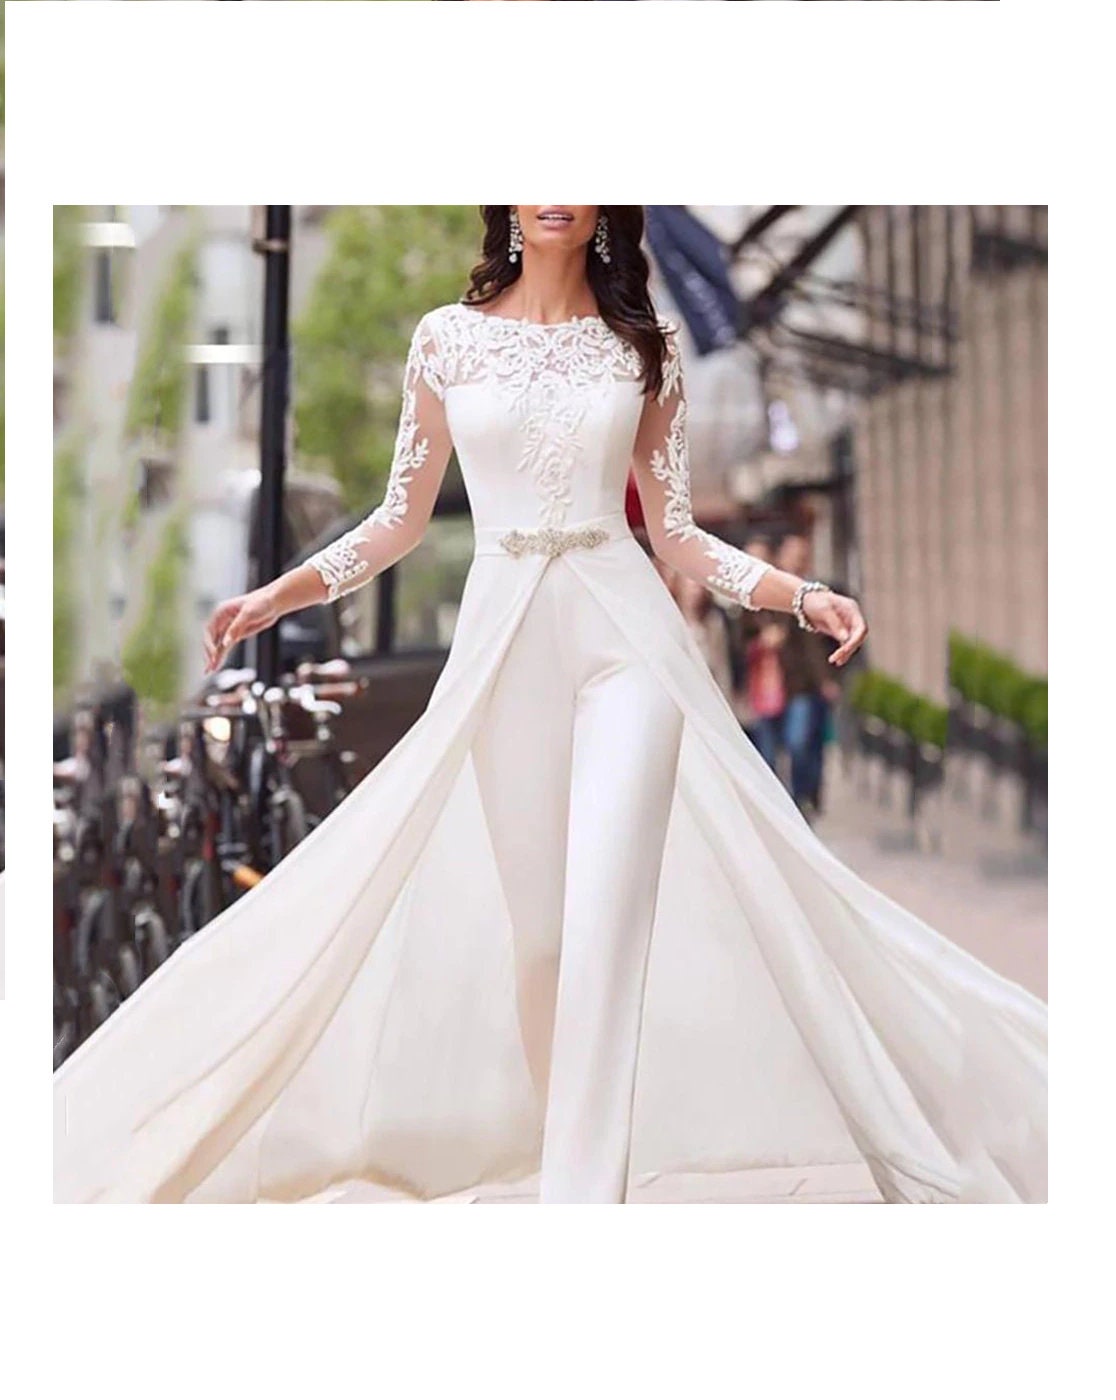 Jumpsuit Lace Wedding Dress With Detachable Train Dress Long - Etsy